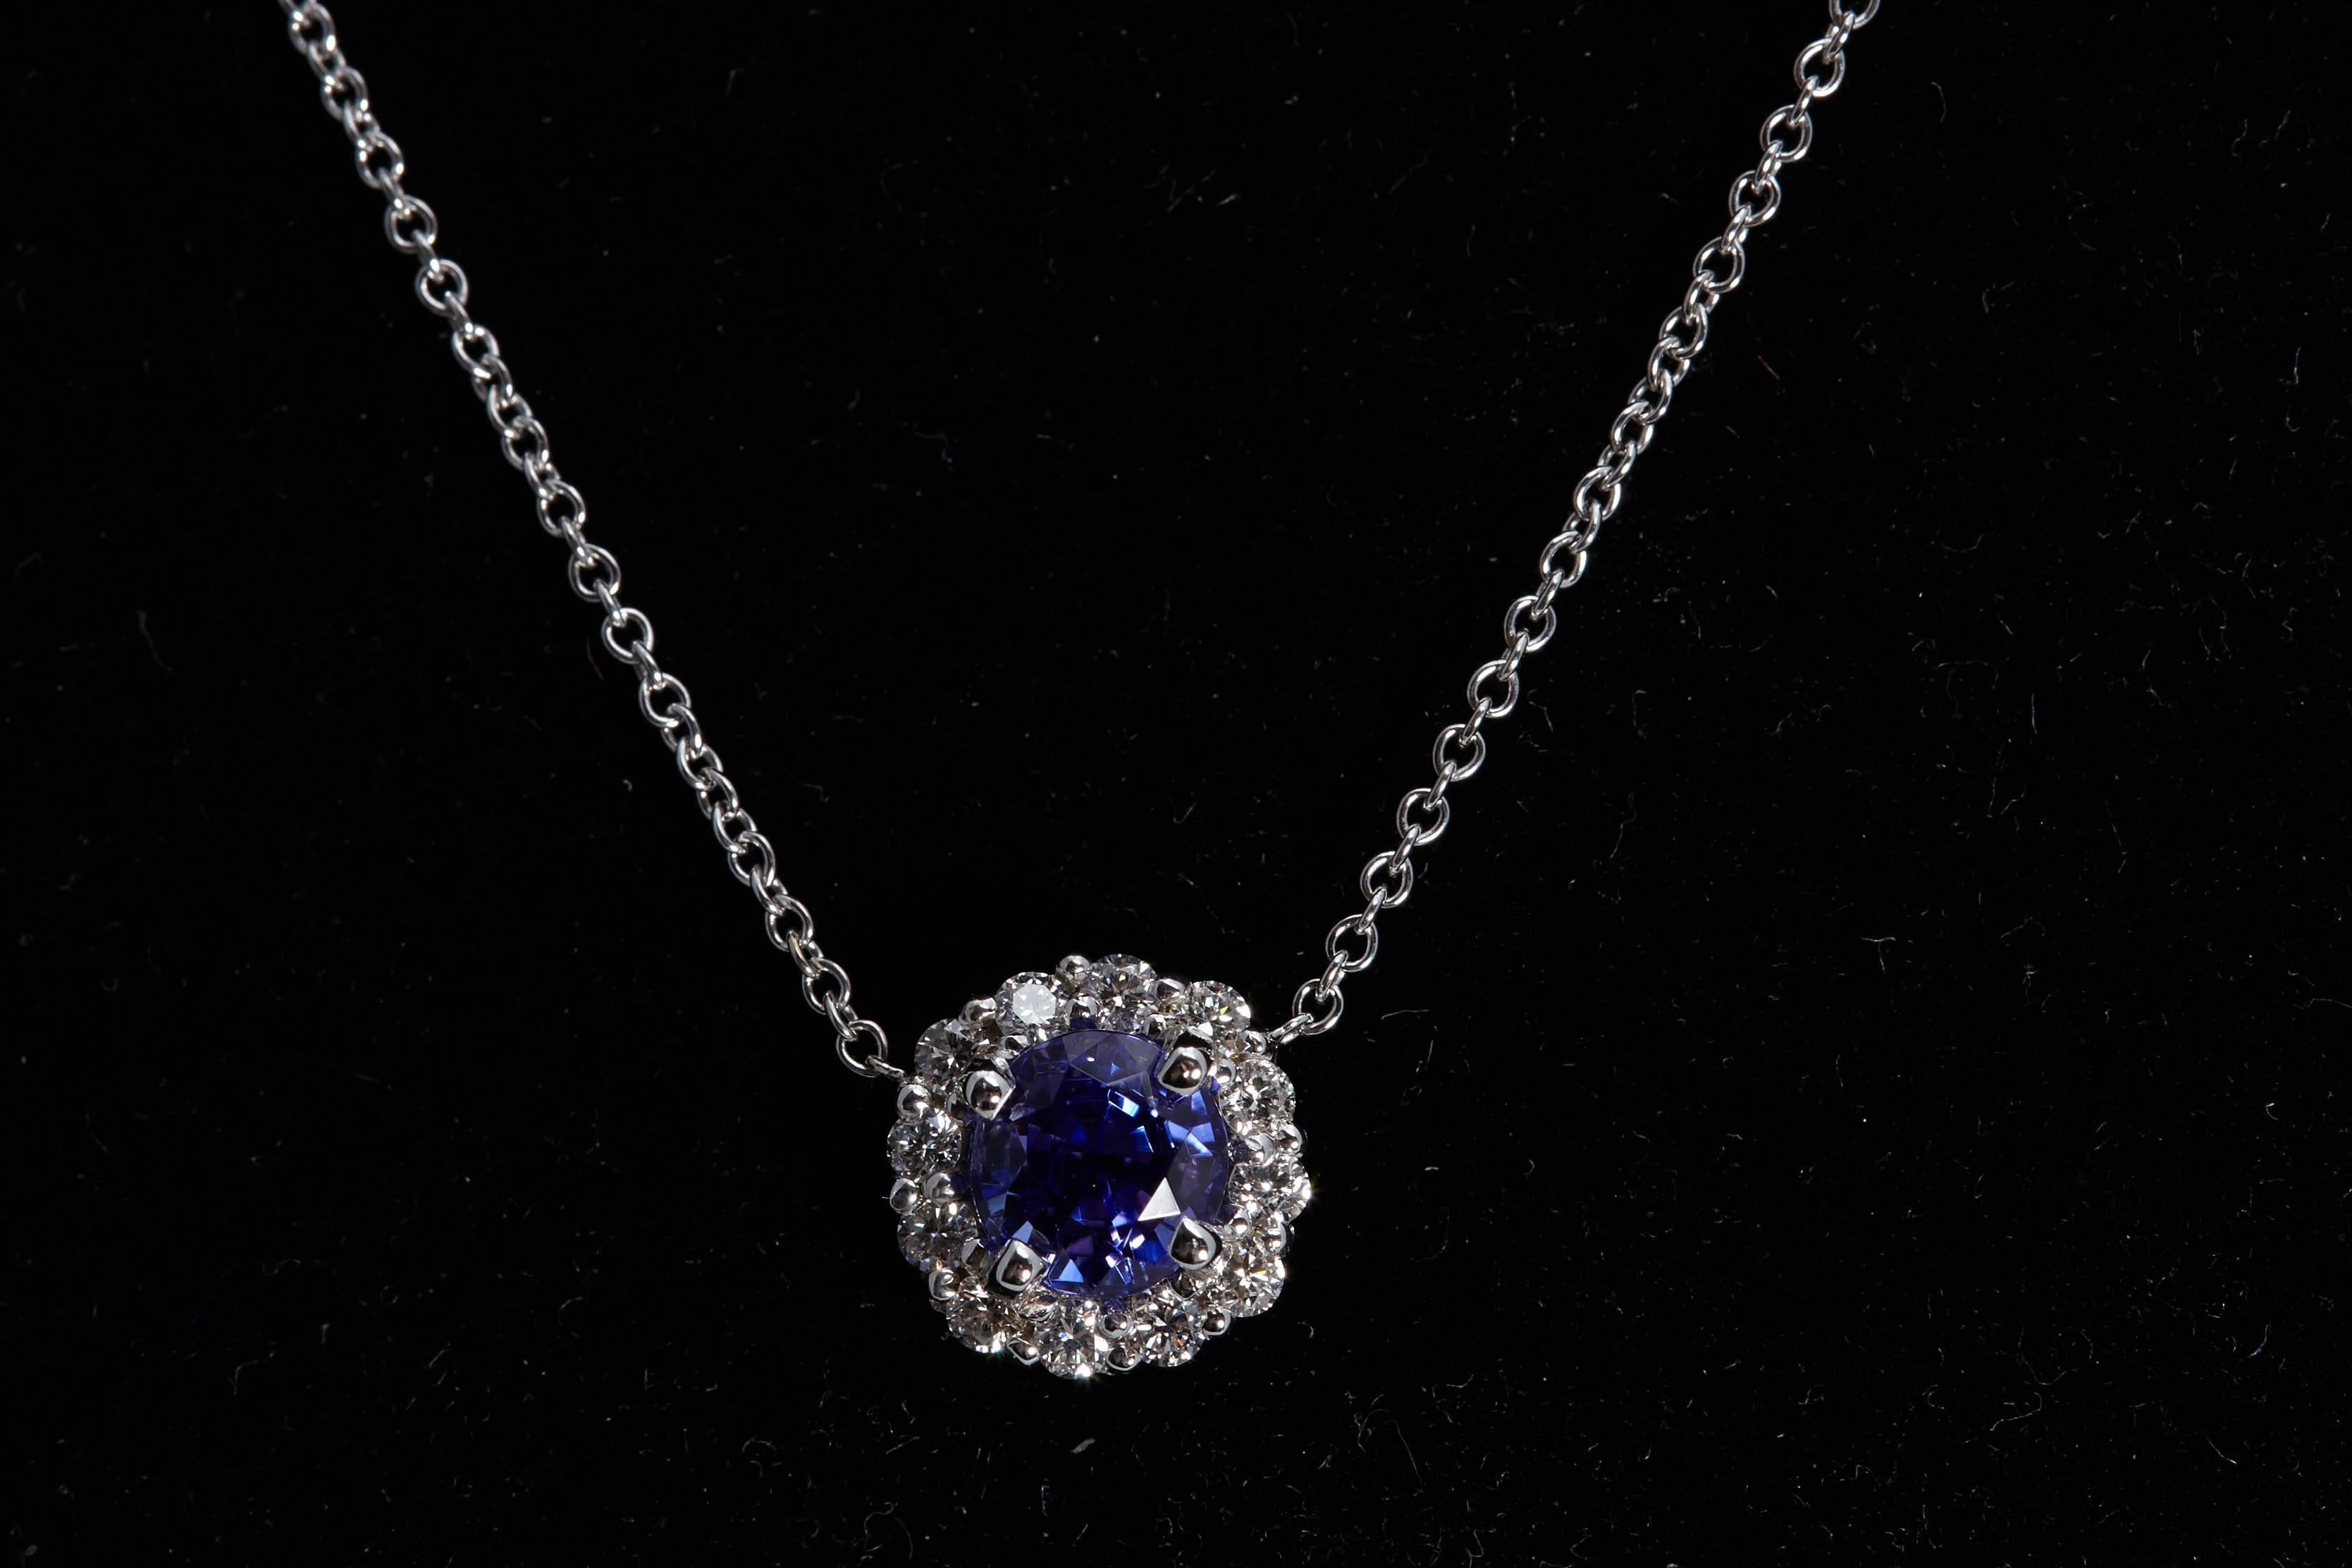 Round tanzanite weighing .99 carat halo pendant with 12 round diamonds weighing .25 carats. The diamonds are 